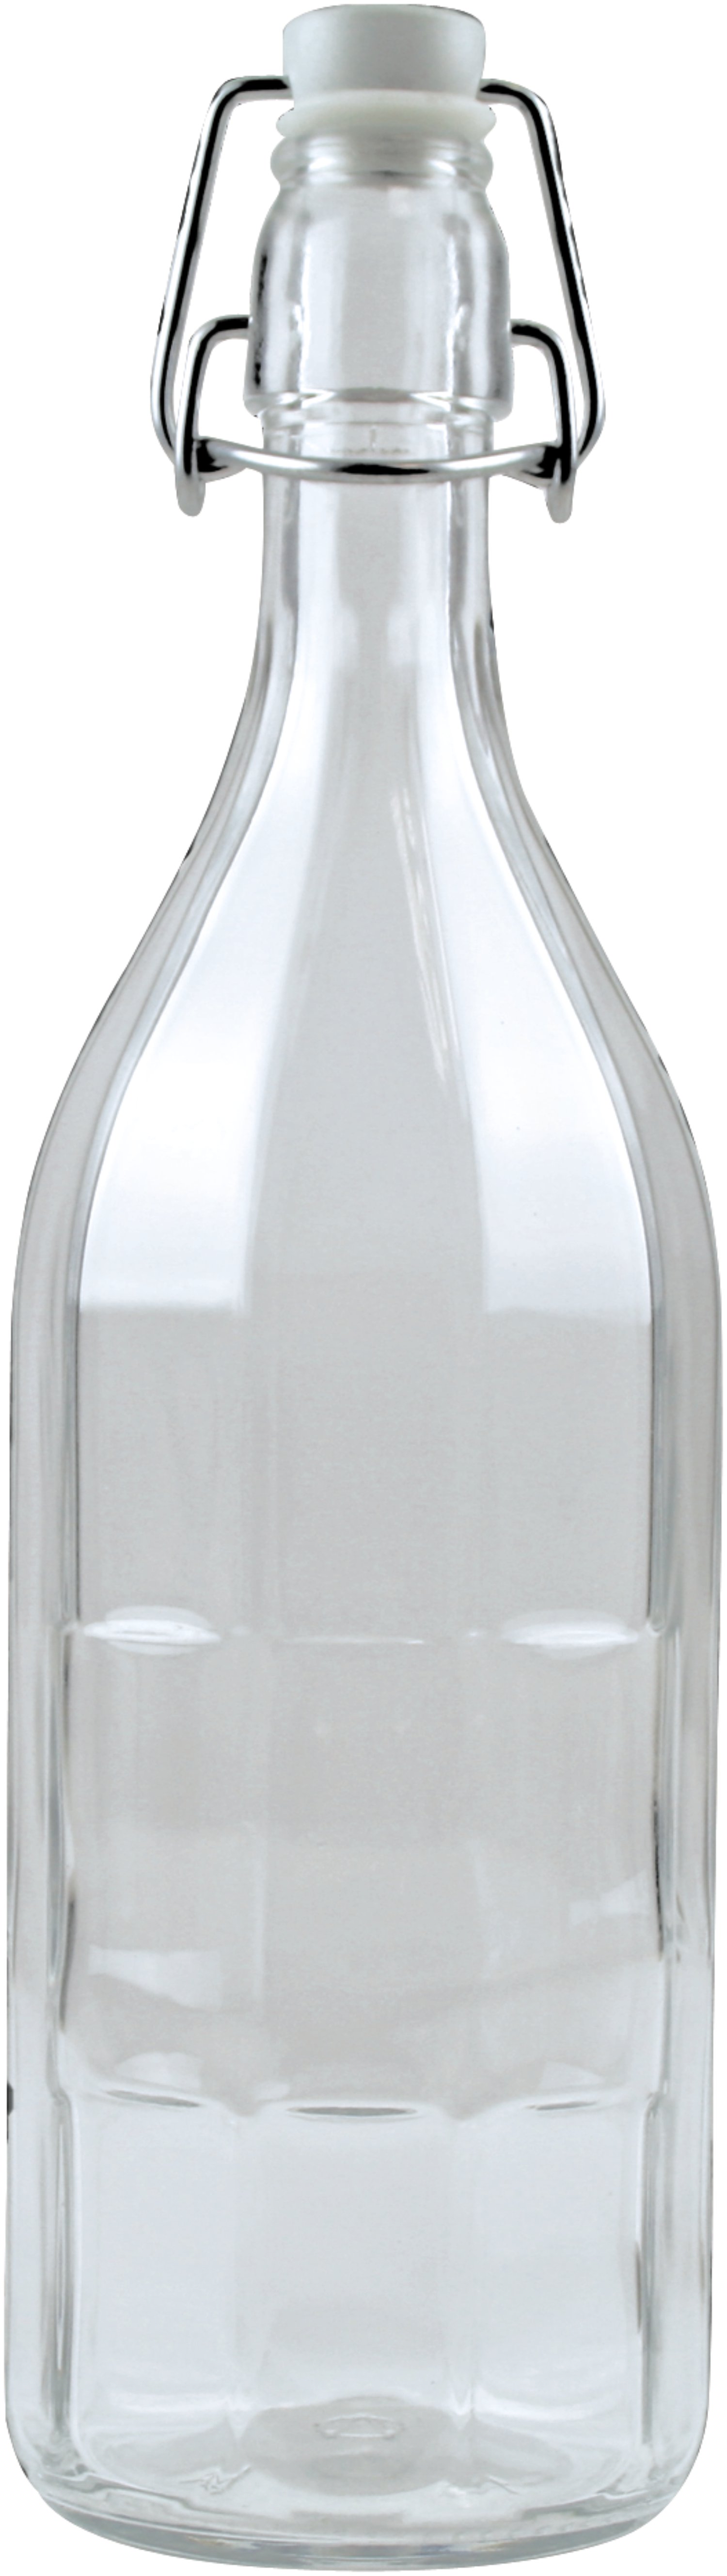 Saftflasche 10 Kantform 0,75 l mit Bügelverschluss